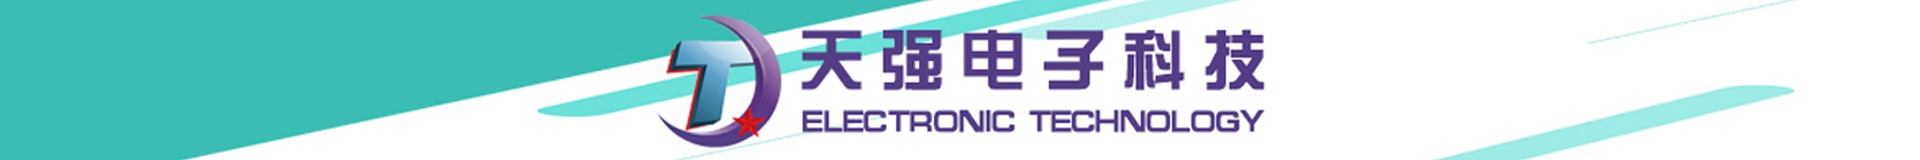 东莞市天强电子科技有限公司